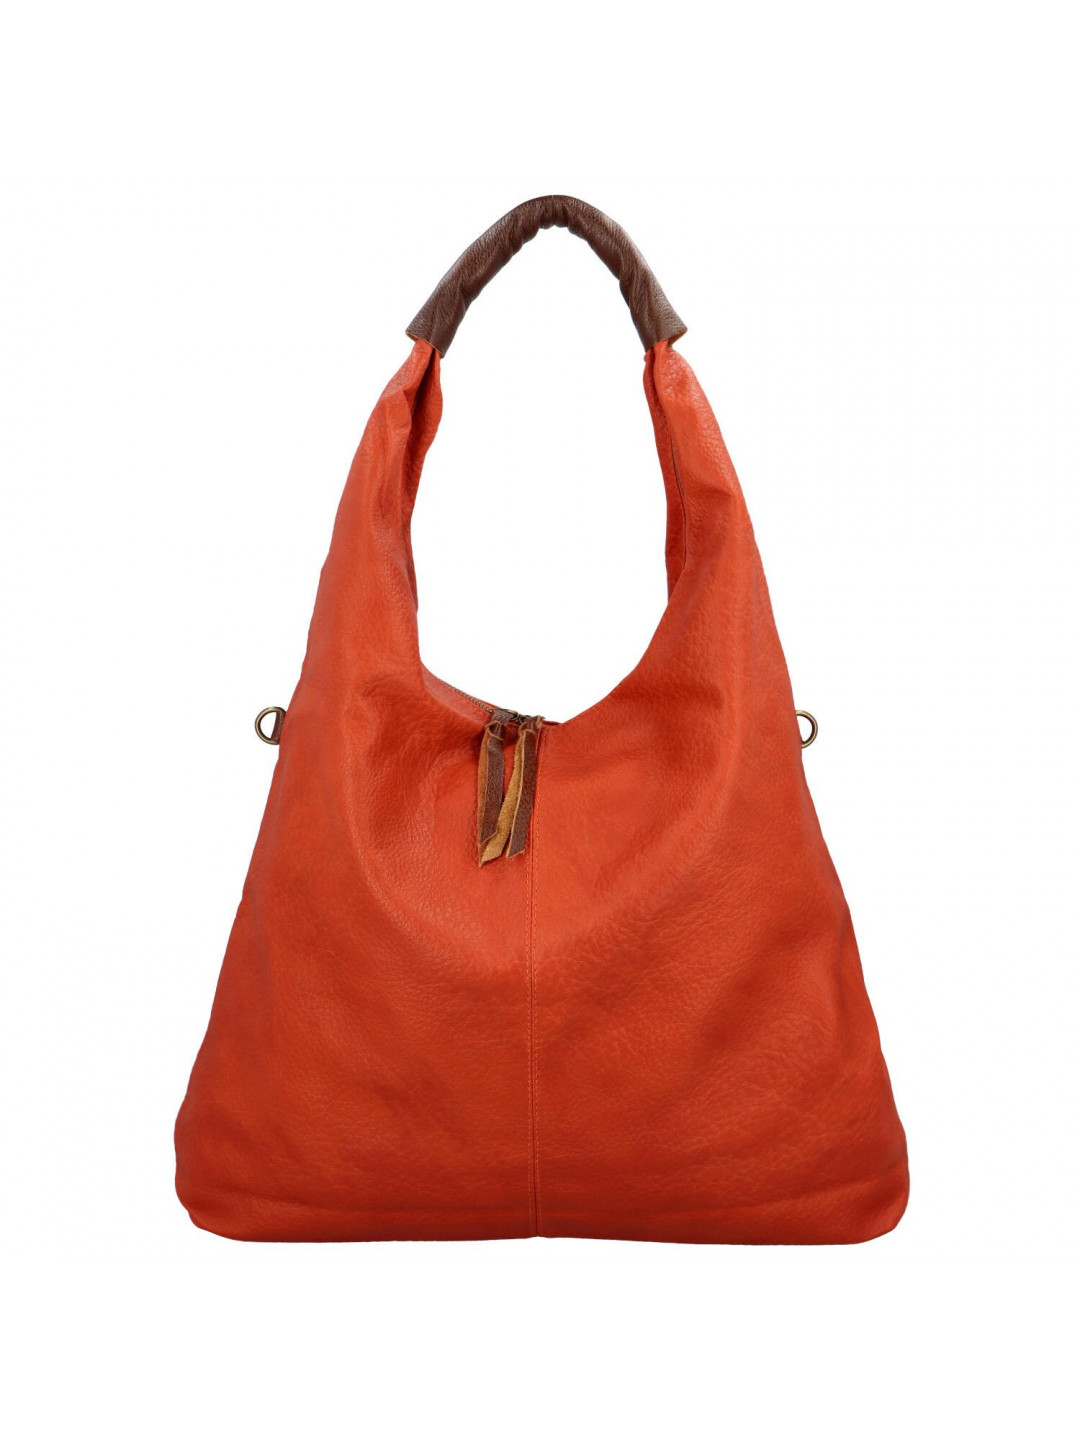 Dámská kabelka přes rameno oranžová – Paolo Bags Dominika